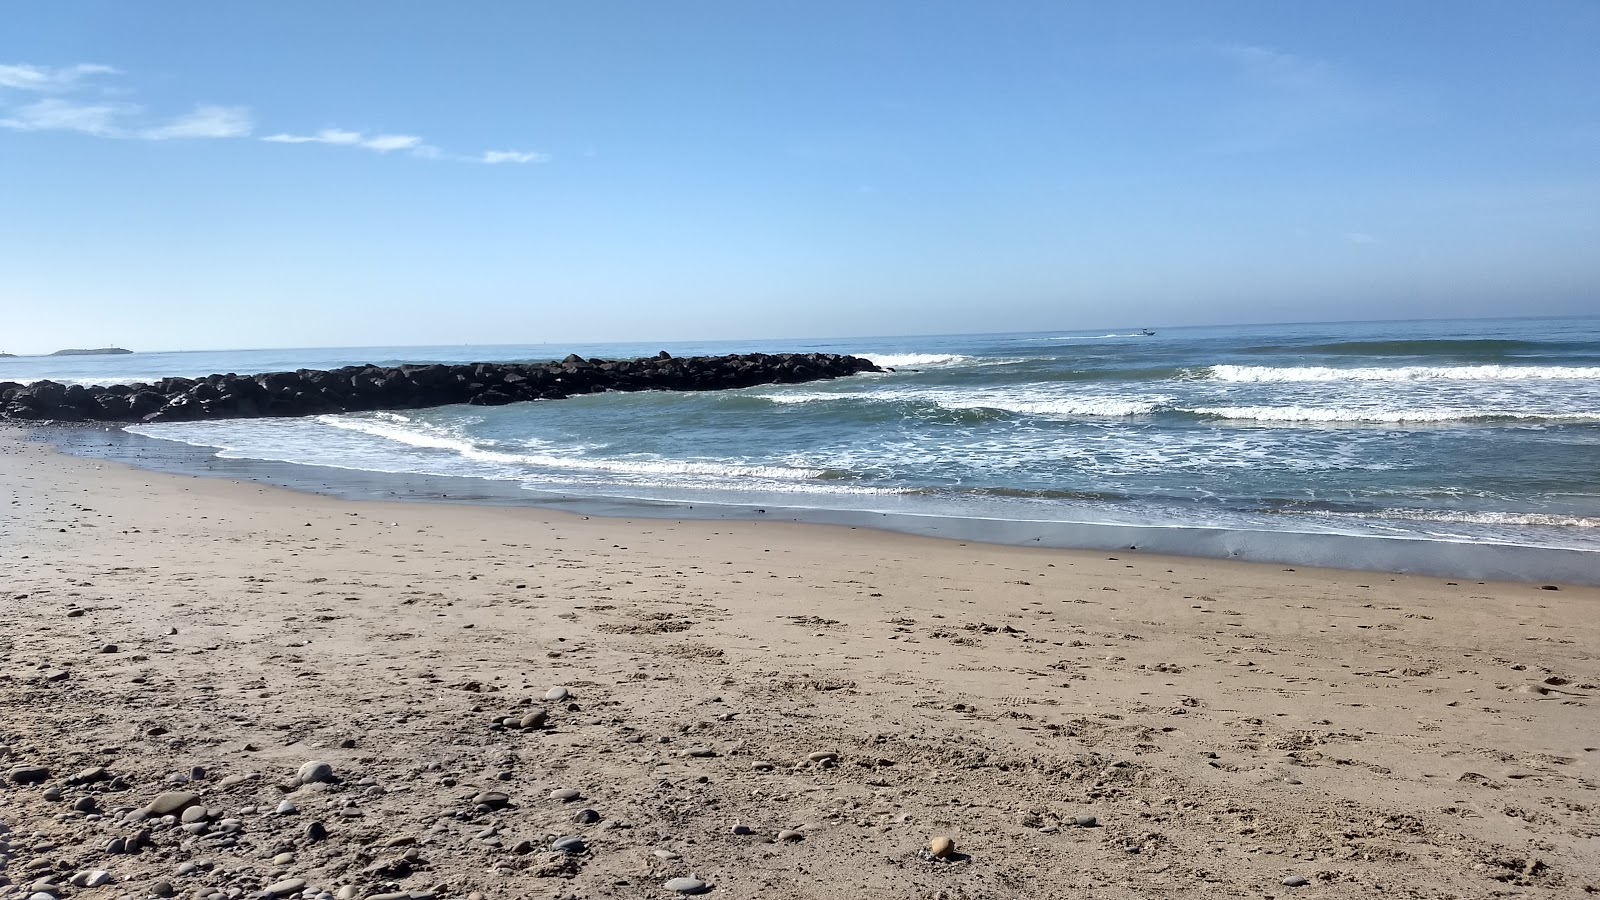 Foto von Ventura Beach und die siedlung